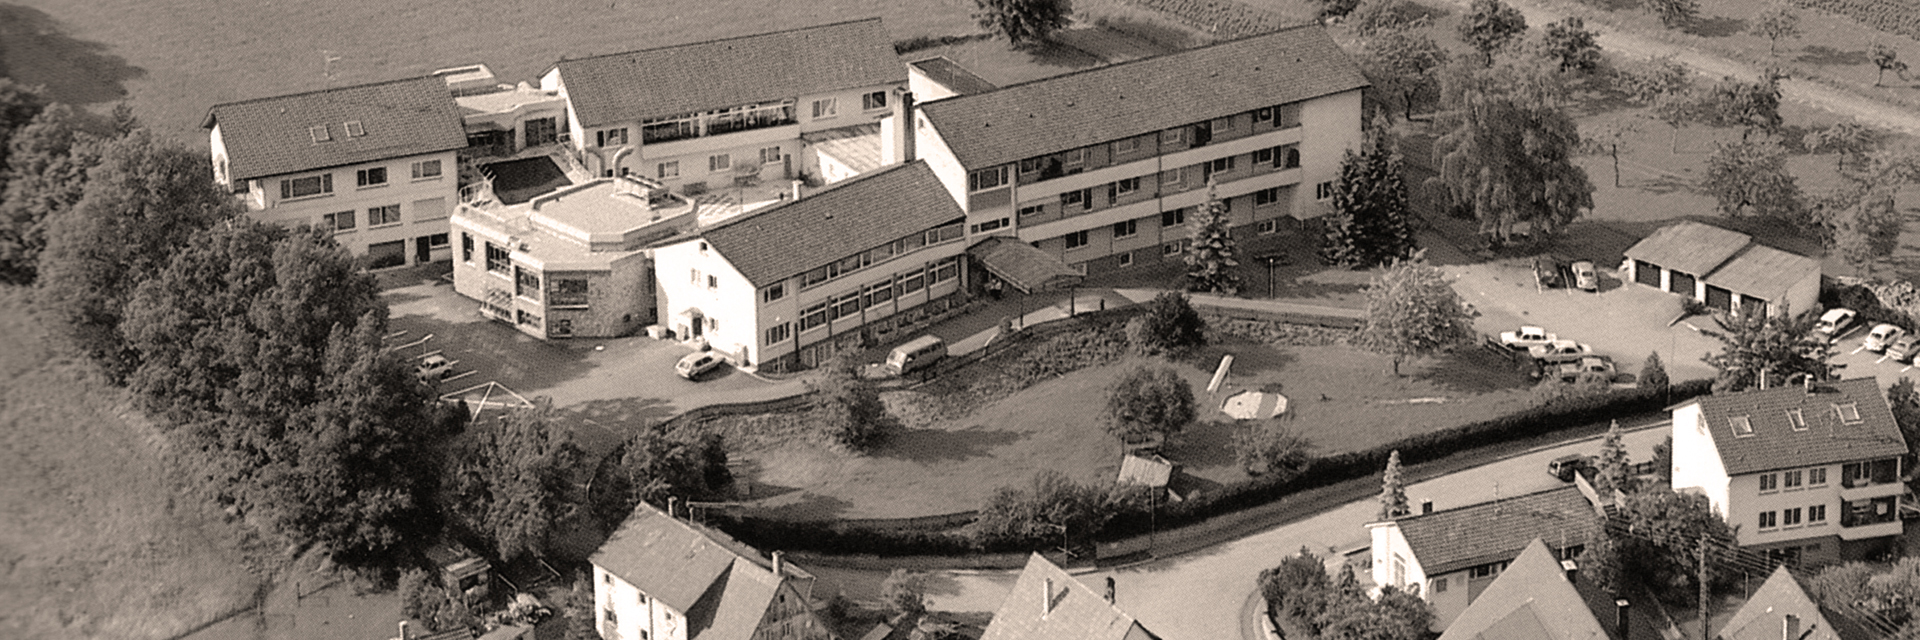 Bild: Luftaufnahme der Kinderklinik in den siebziger Jahren